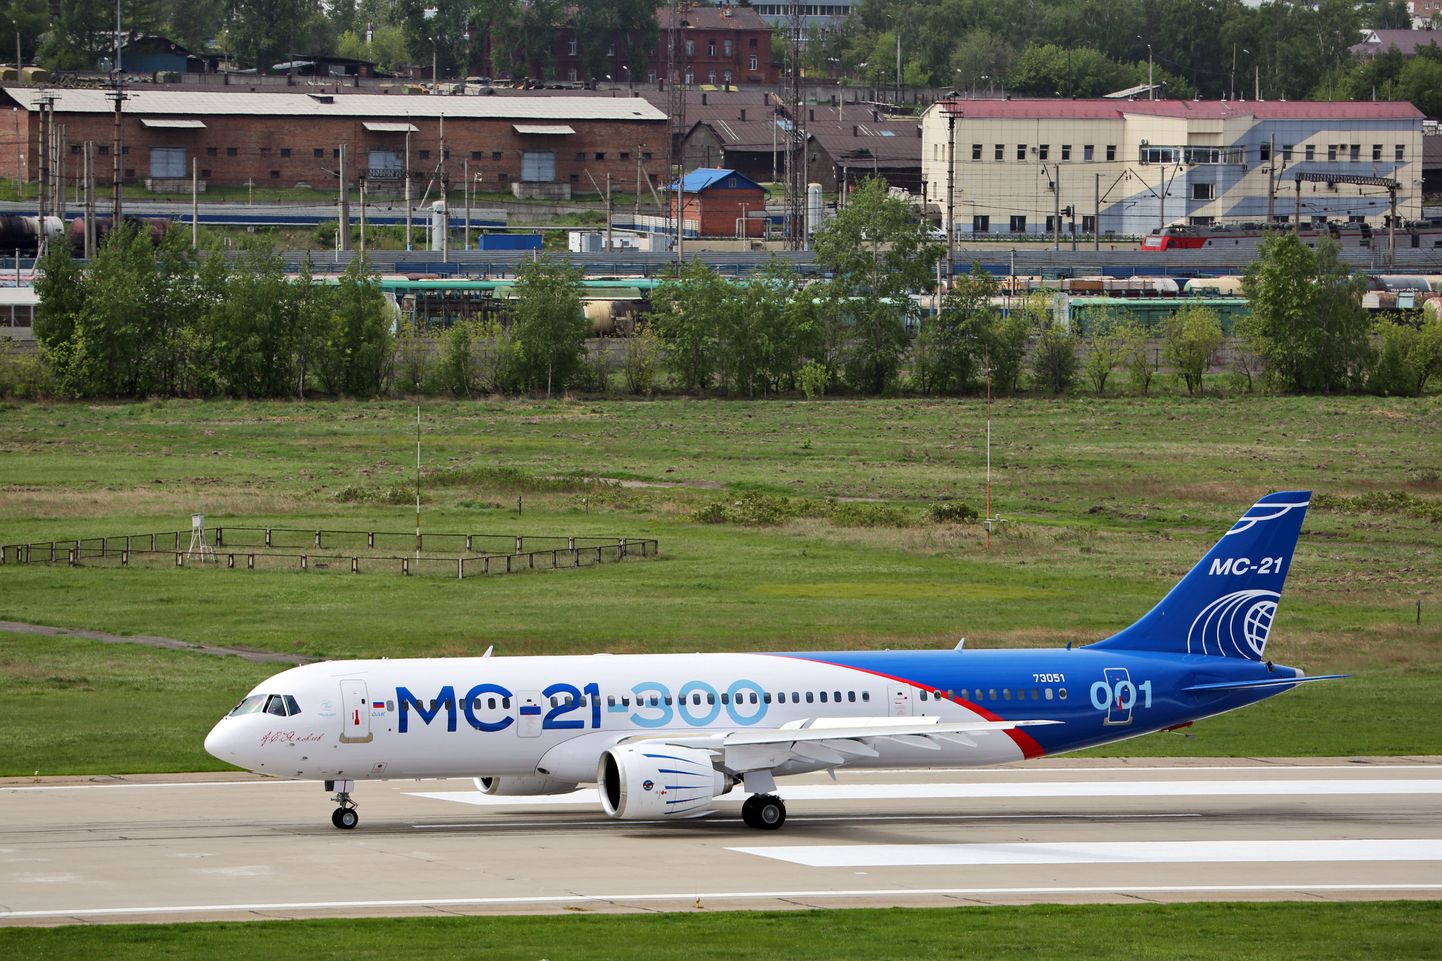 MC-21-300